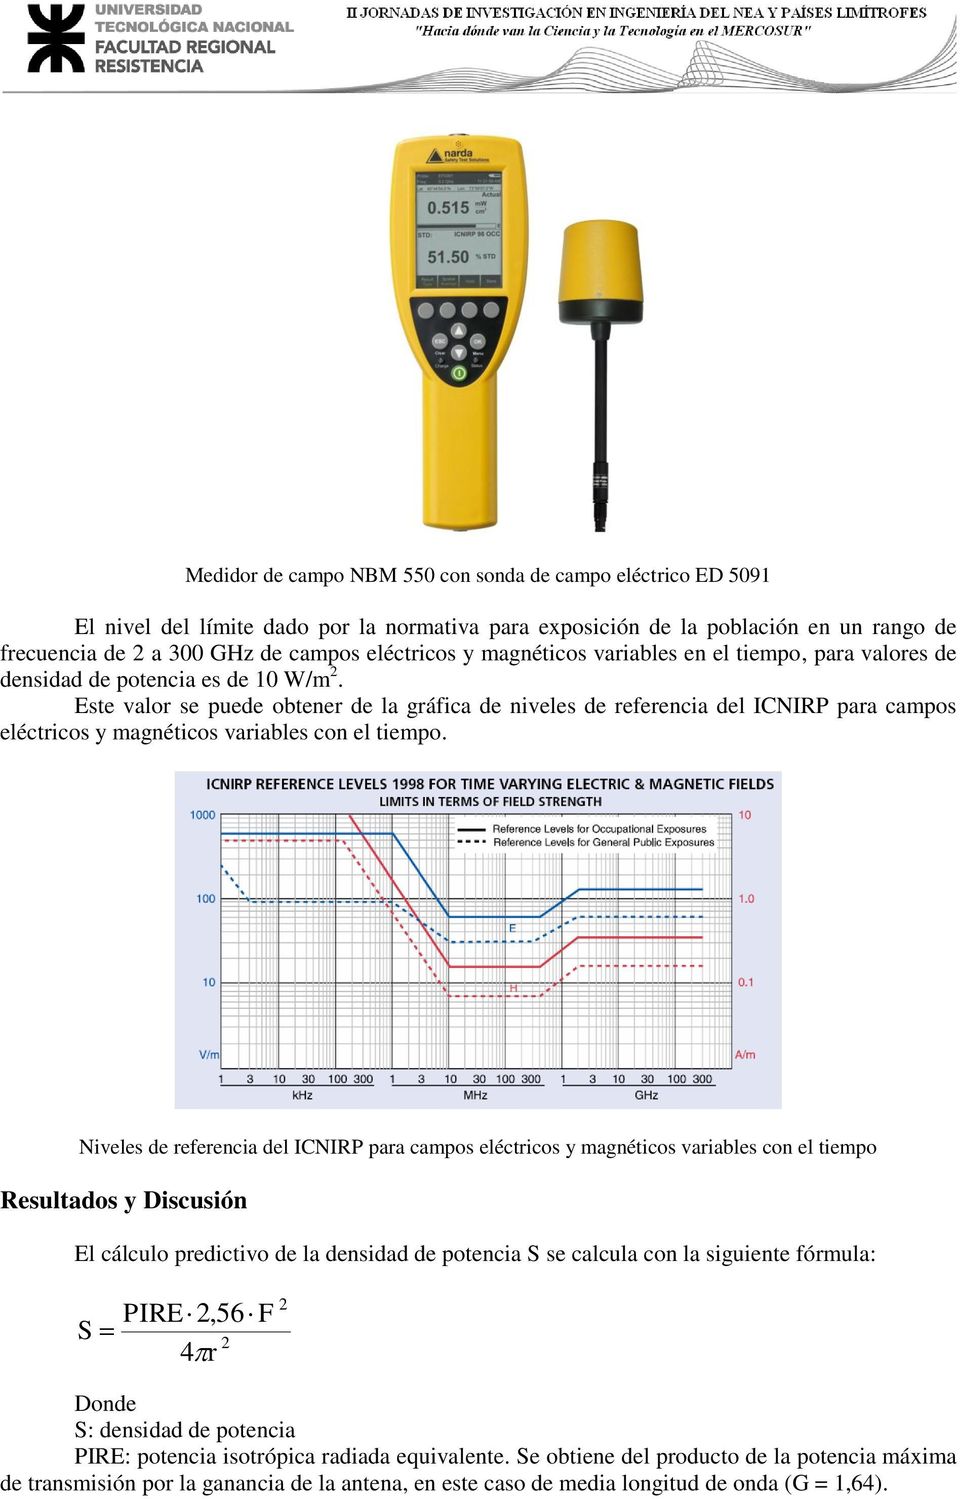 Este valor se puede obtener de la gráfica de niveles de referencia del ICNIRP para campos eléctricos y magnéticos variables con el tiempo.